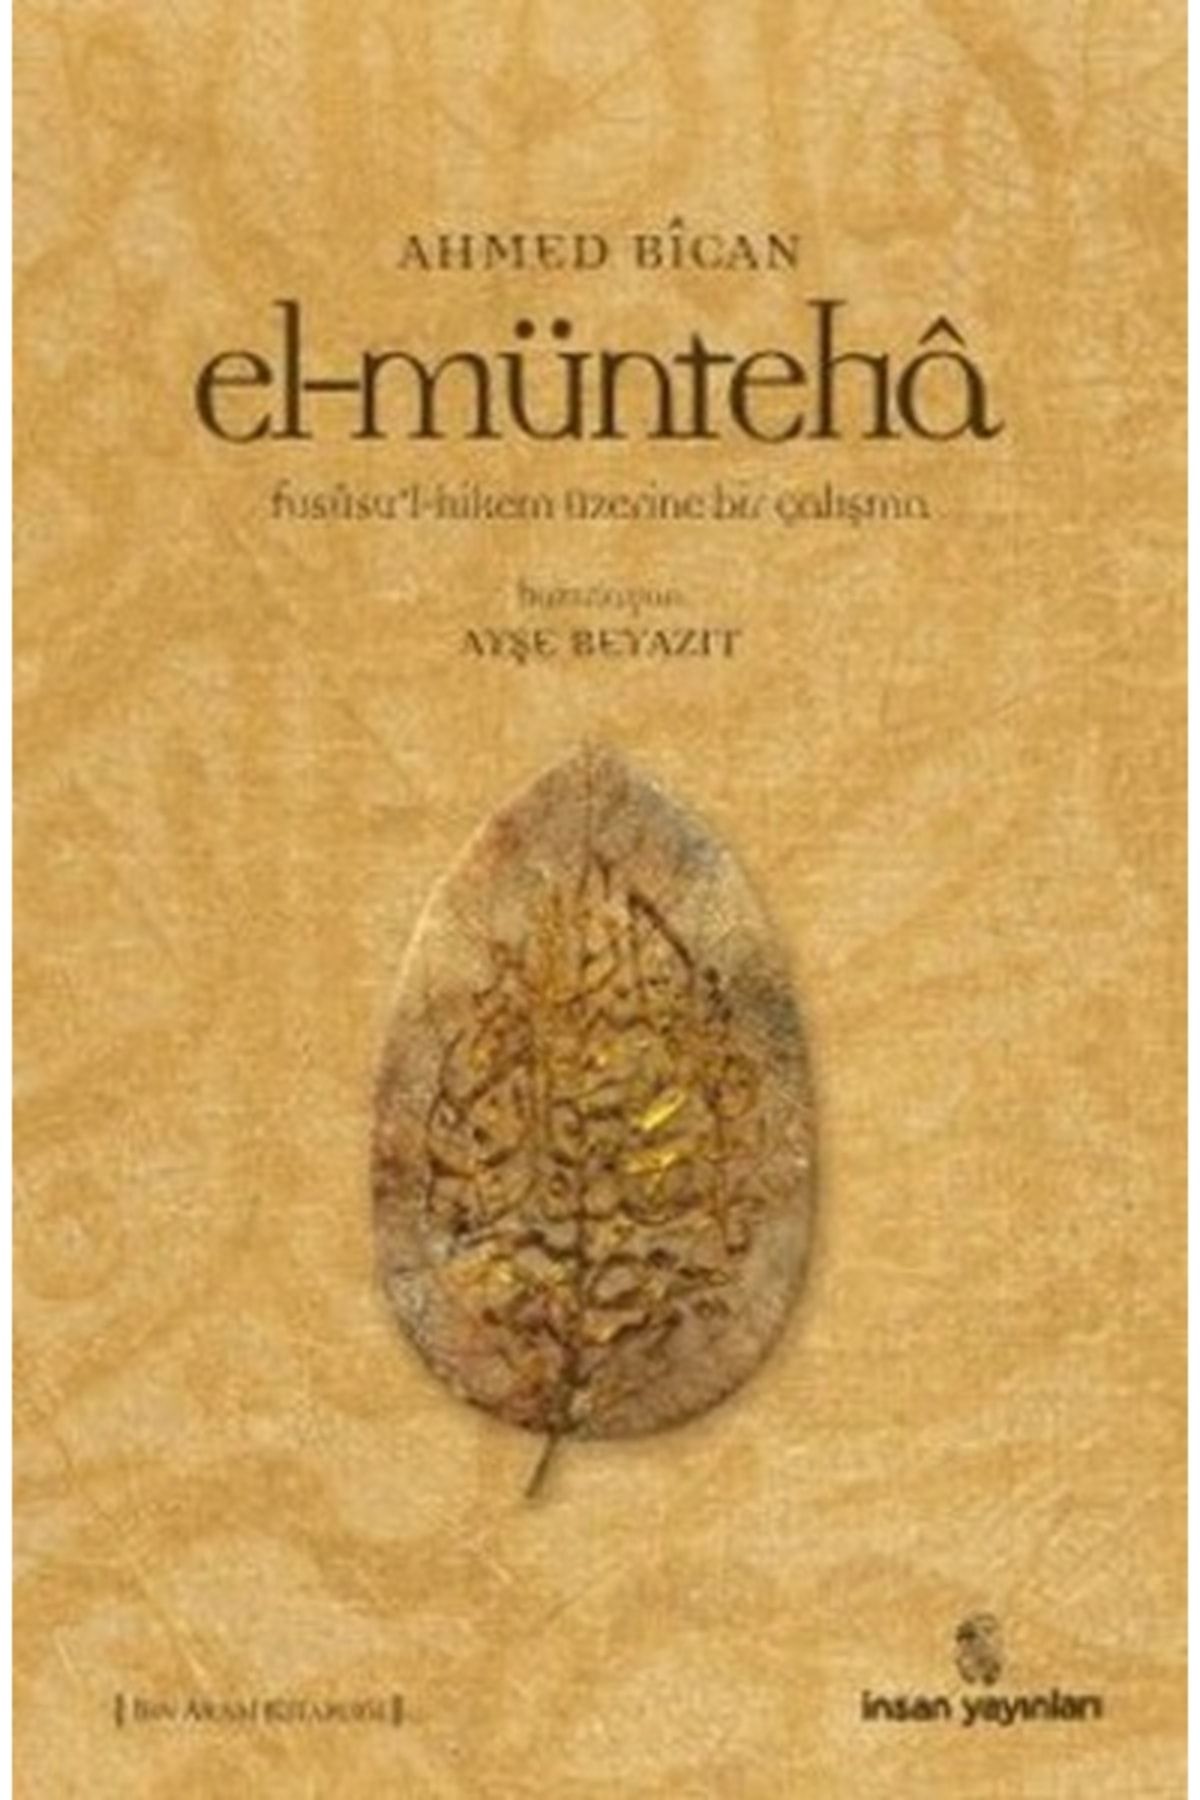 İnsan Yayınları El-münteha - Ahmet Bican